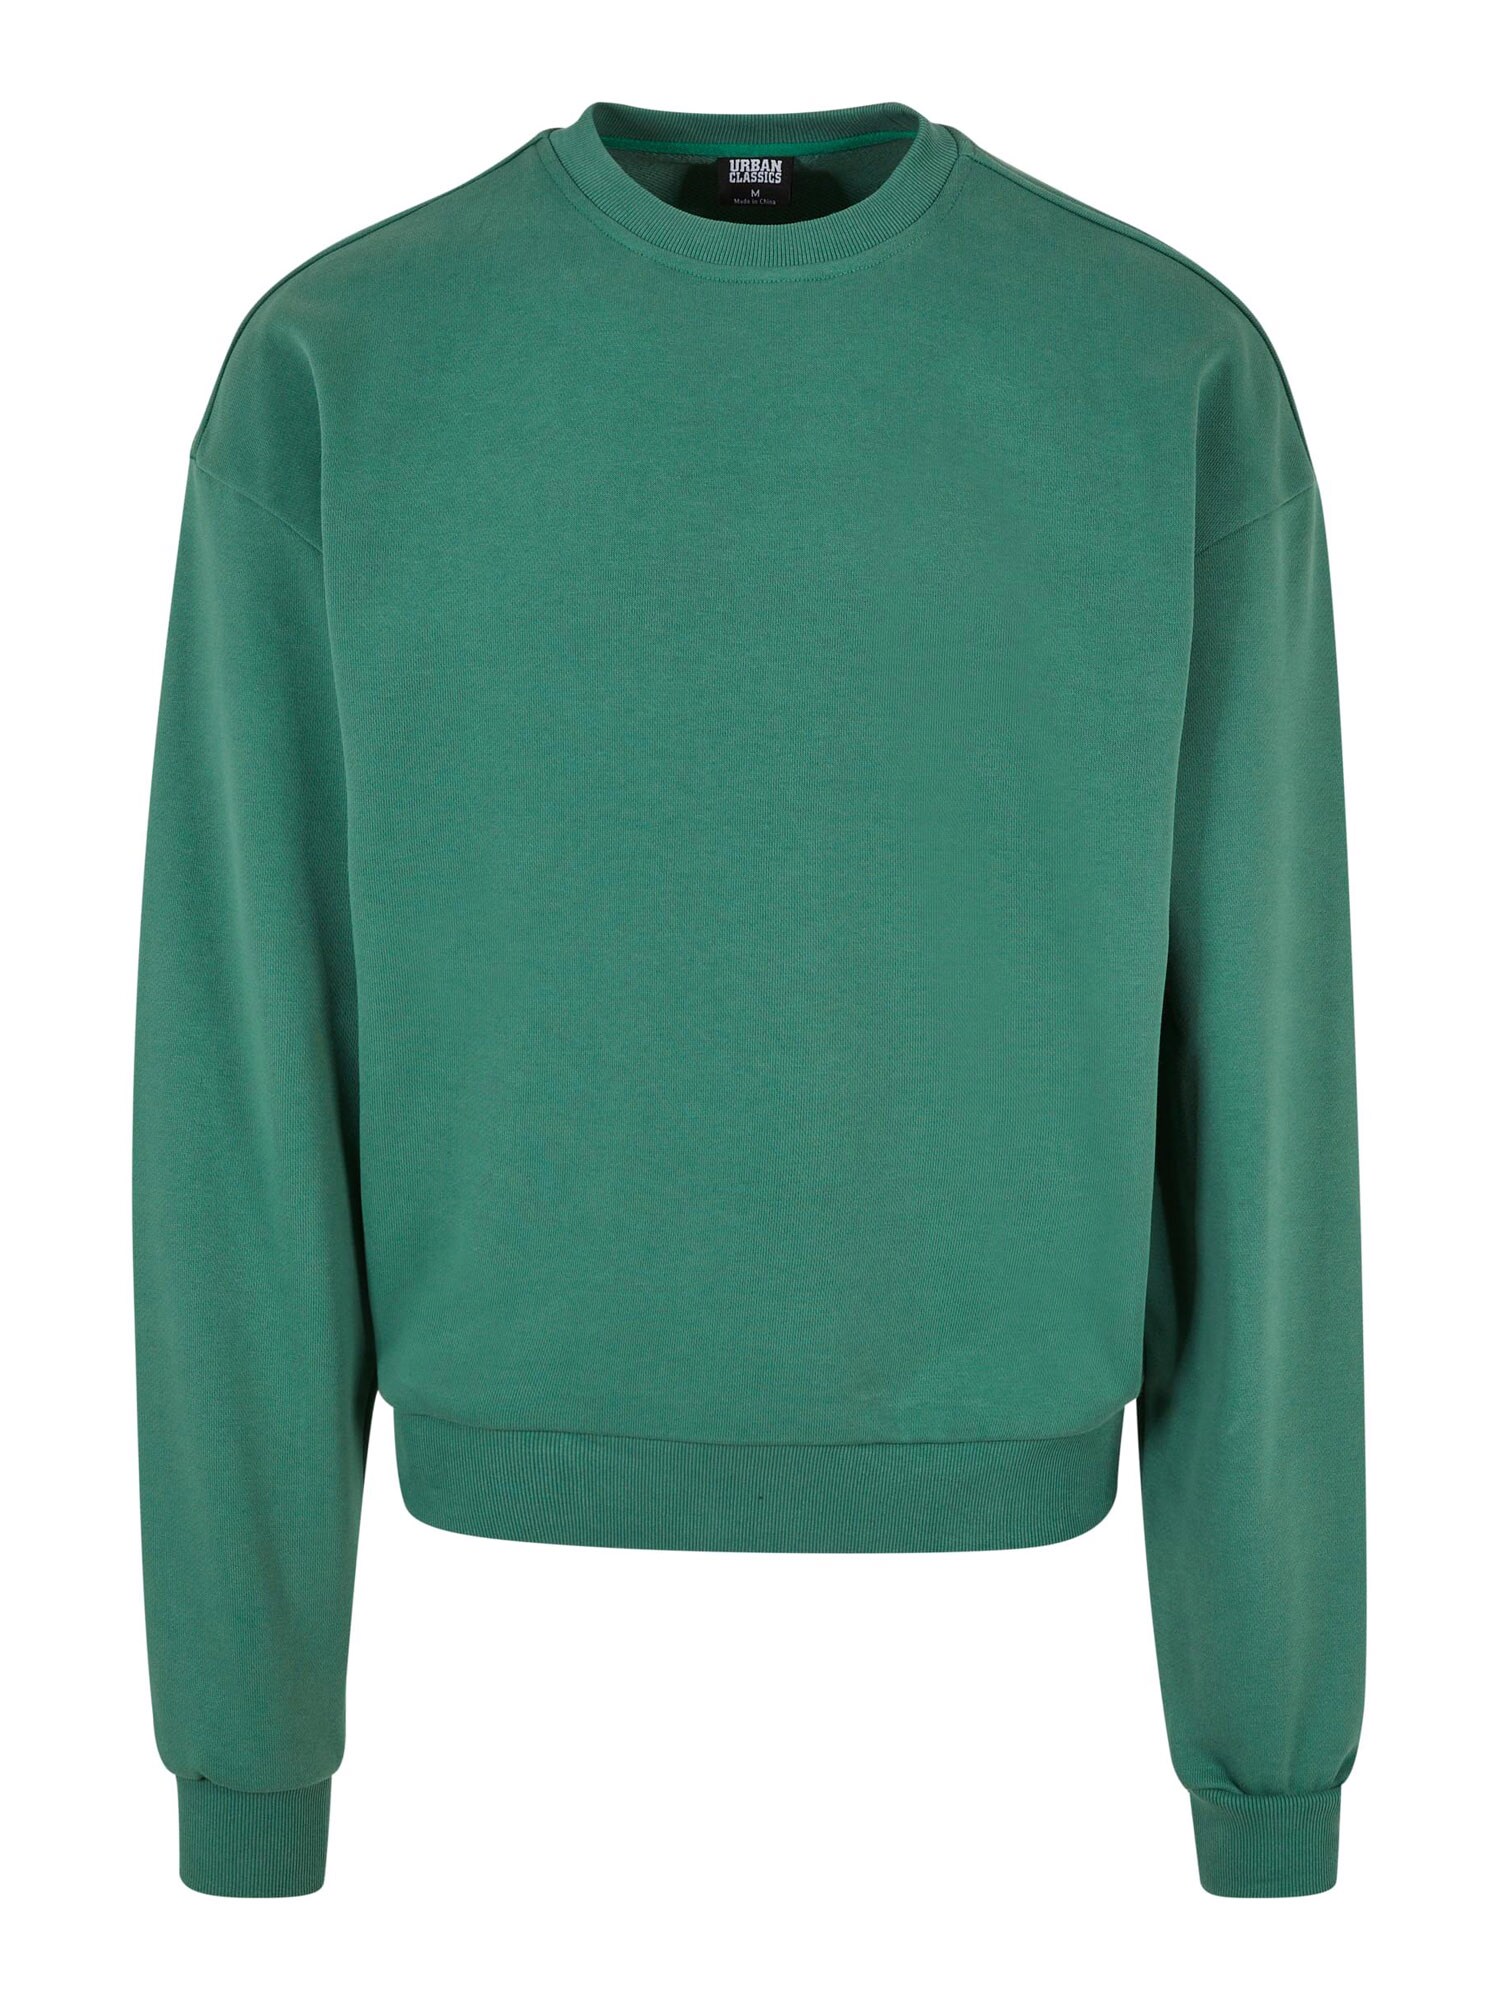 Urban Classics Sweatshirt  grasgrøn product